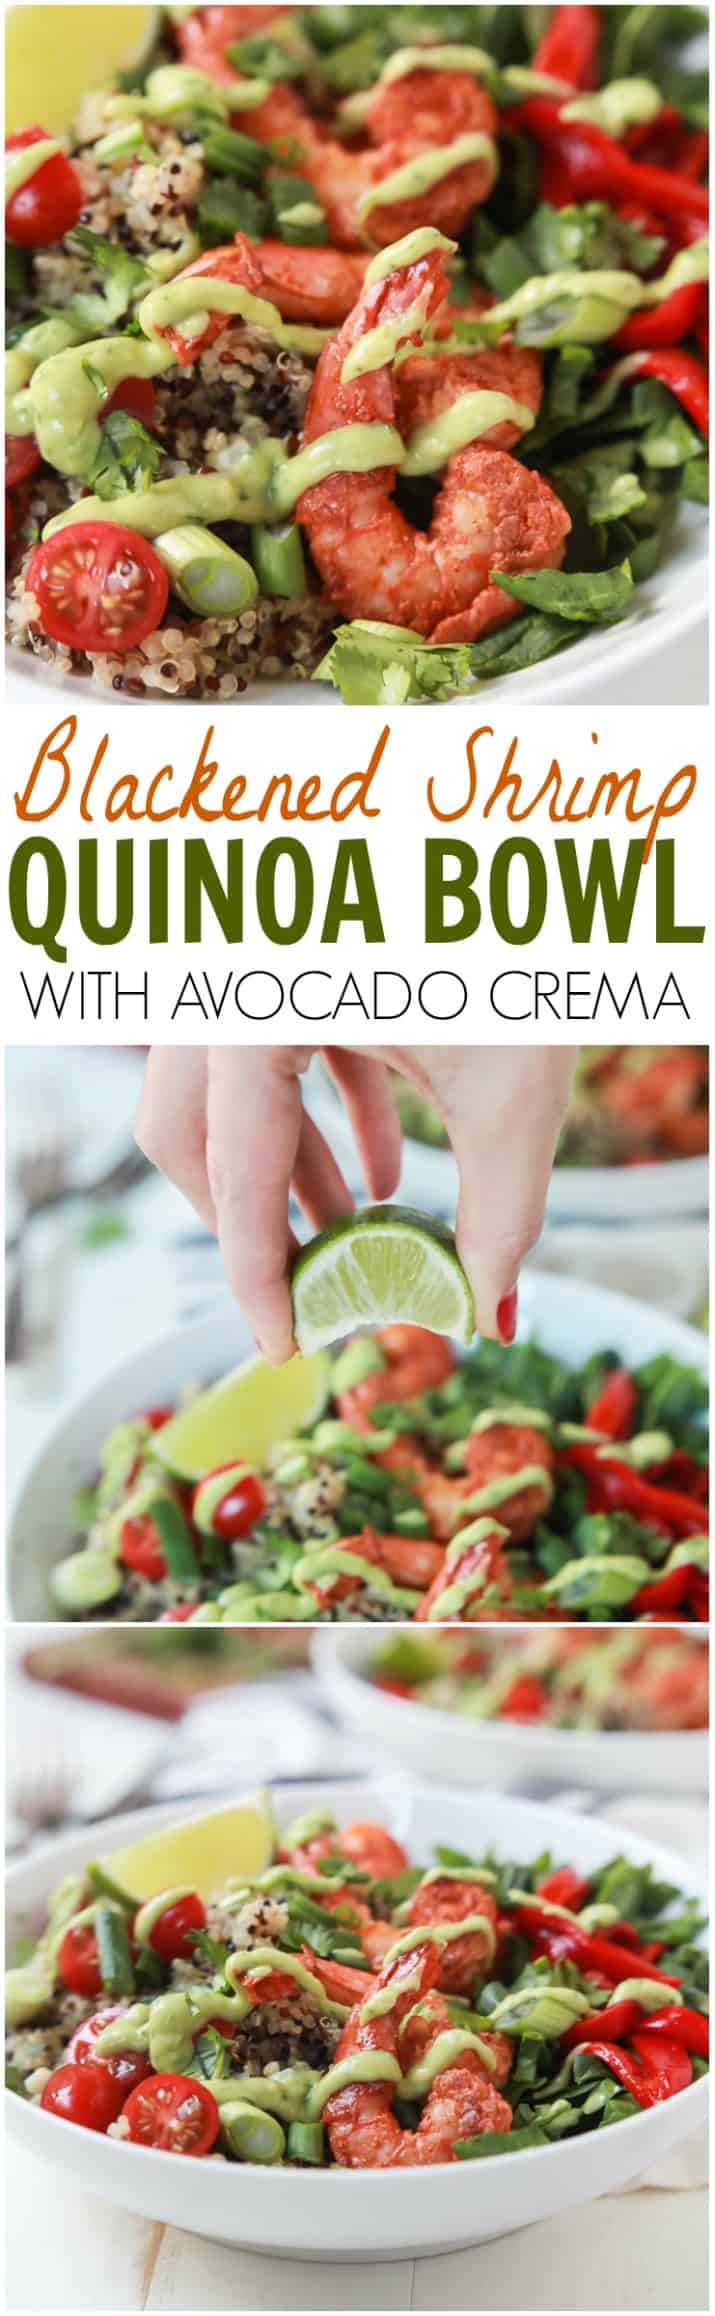 Title Image for Blackened Shrimp Quinoa Bowl with Avocado Crema